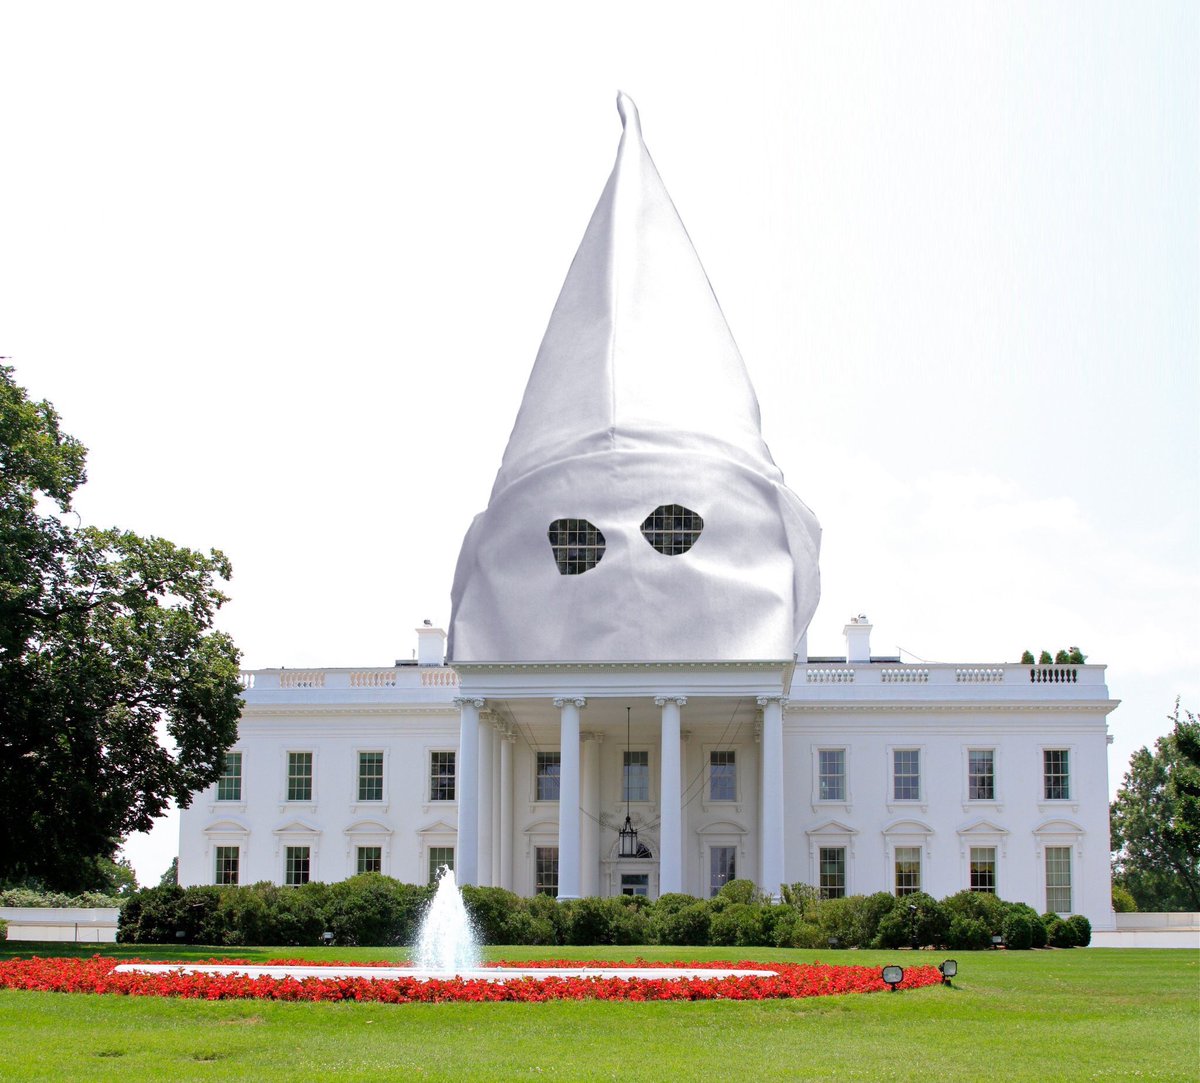 Make White House Only White Again? via twitter.com